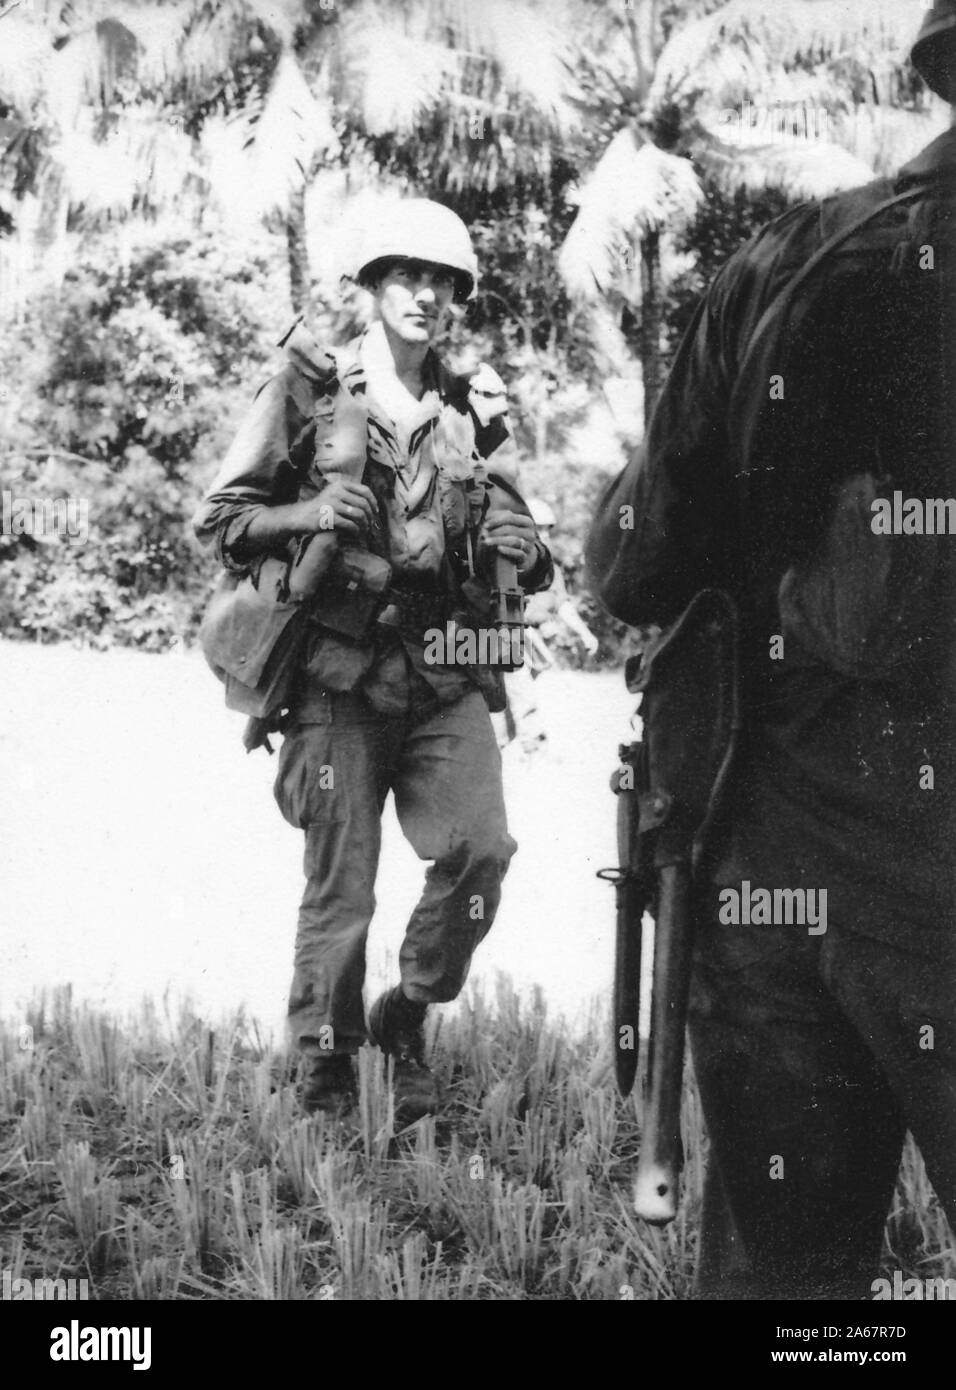 Amerikanische Soldaten, die während des Vietnamkriegs, Vietnam, 1975, einen großen Teil der Ausrüstung mit sich führen, spazieren durch den Dschungel. () Stockfoto